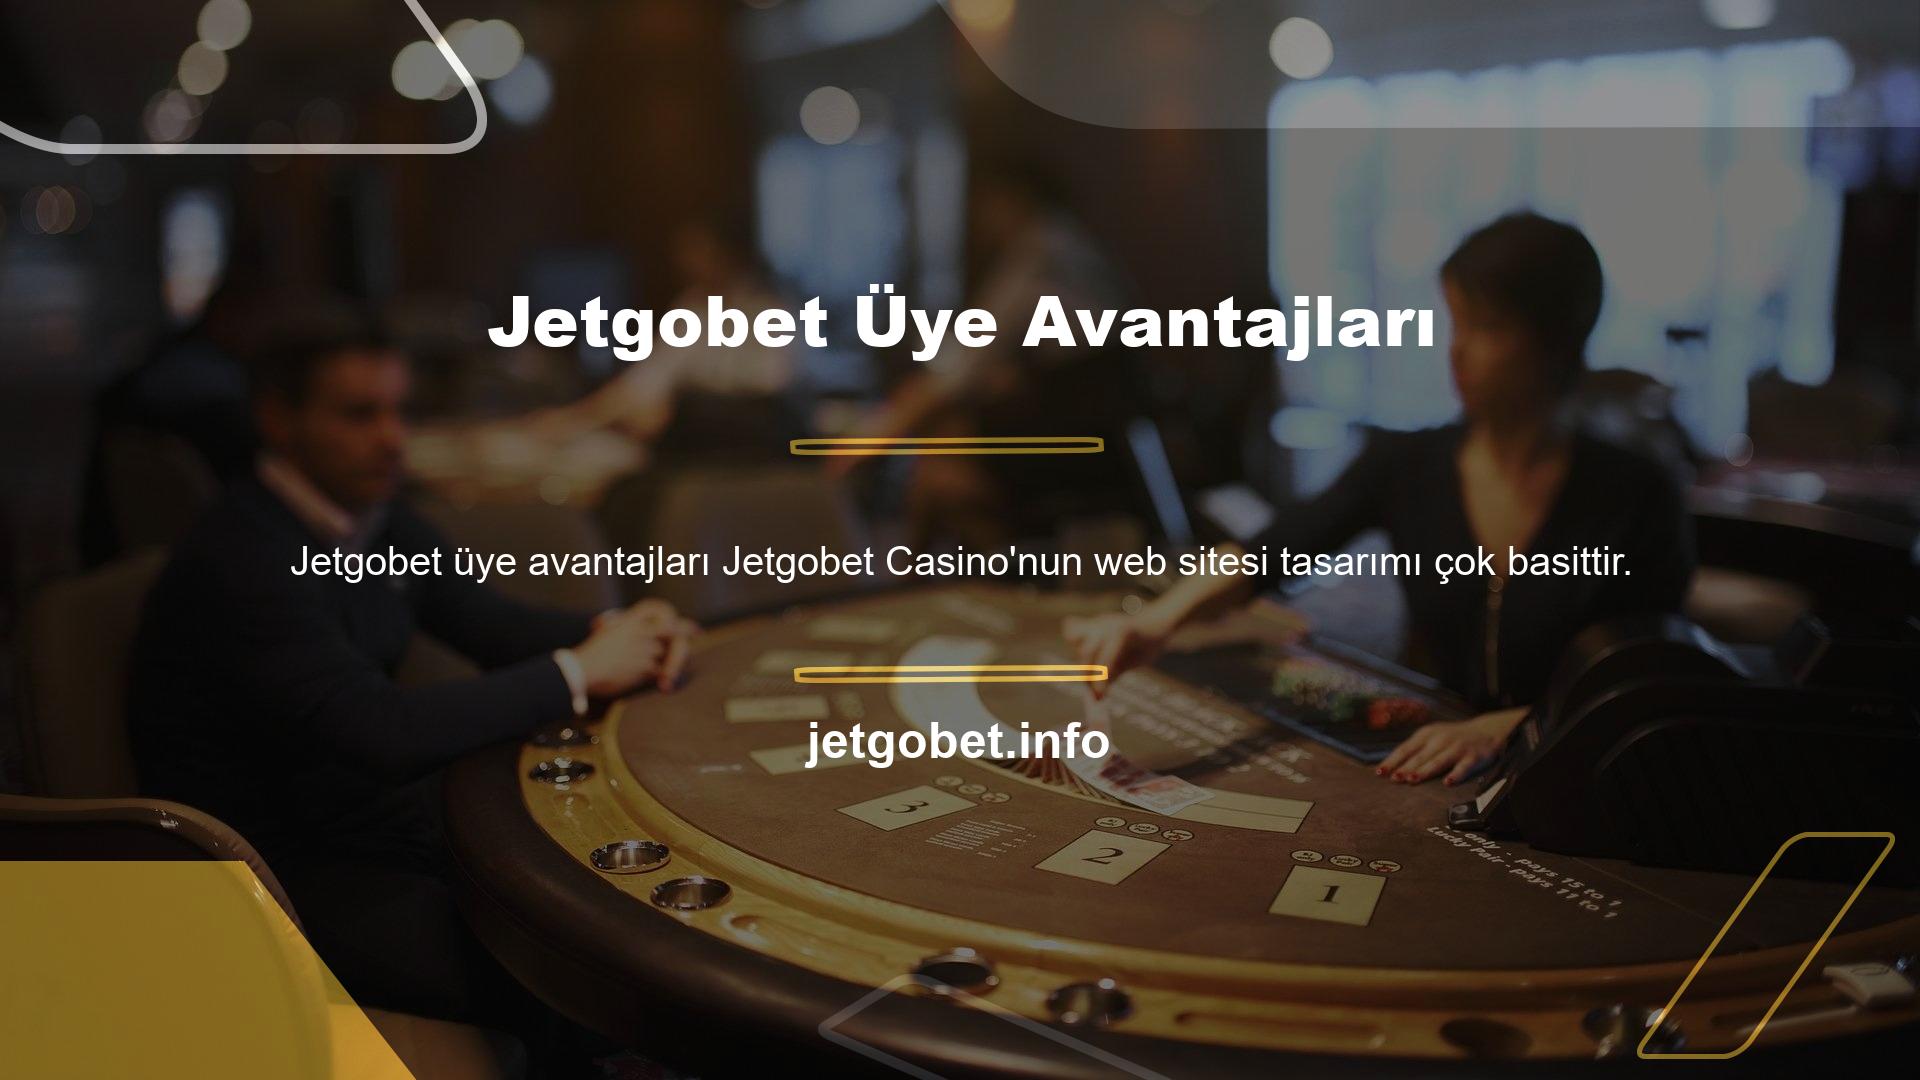 Herkes Jetgobet güncel adresindeki web sitesini ziyaret ederek kayıt bölümünden üyelik işlemine başlayabilir